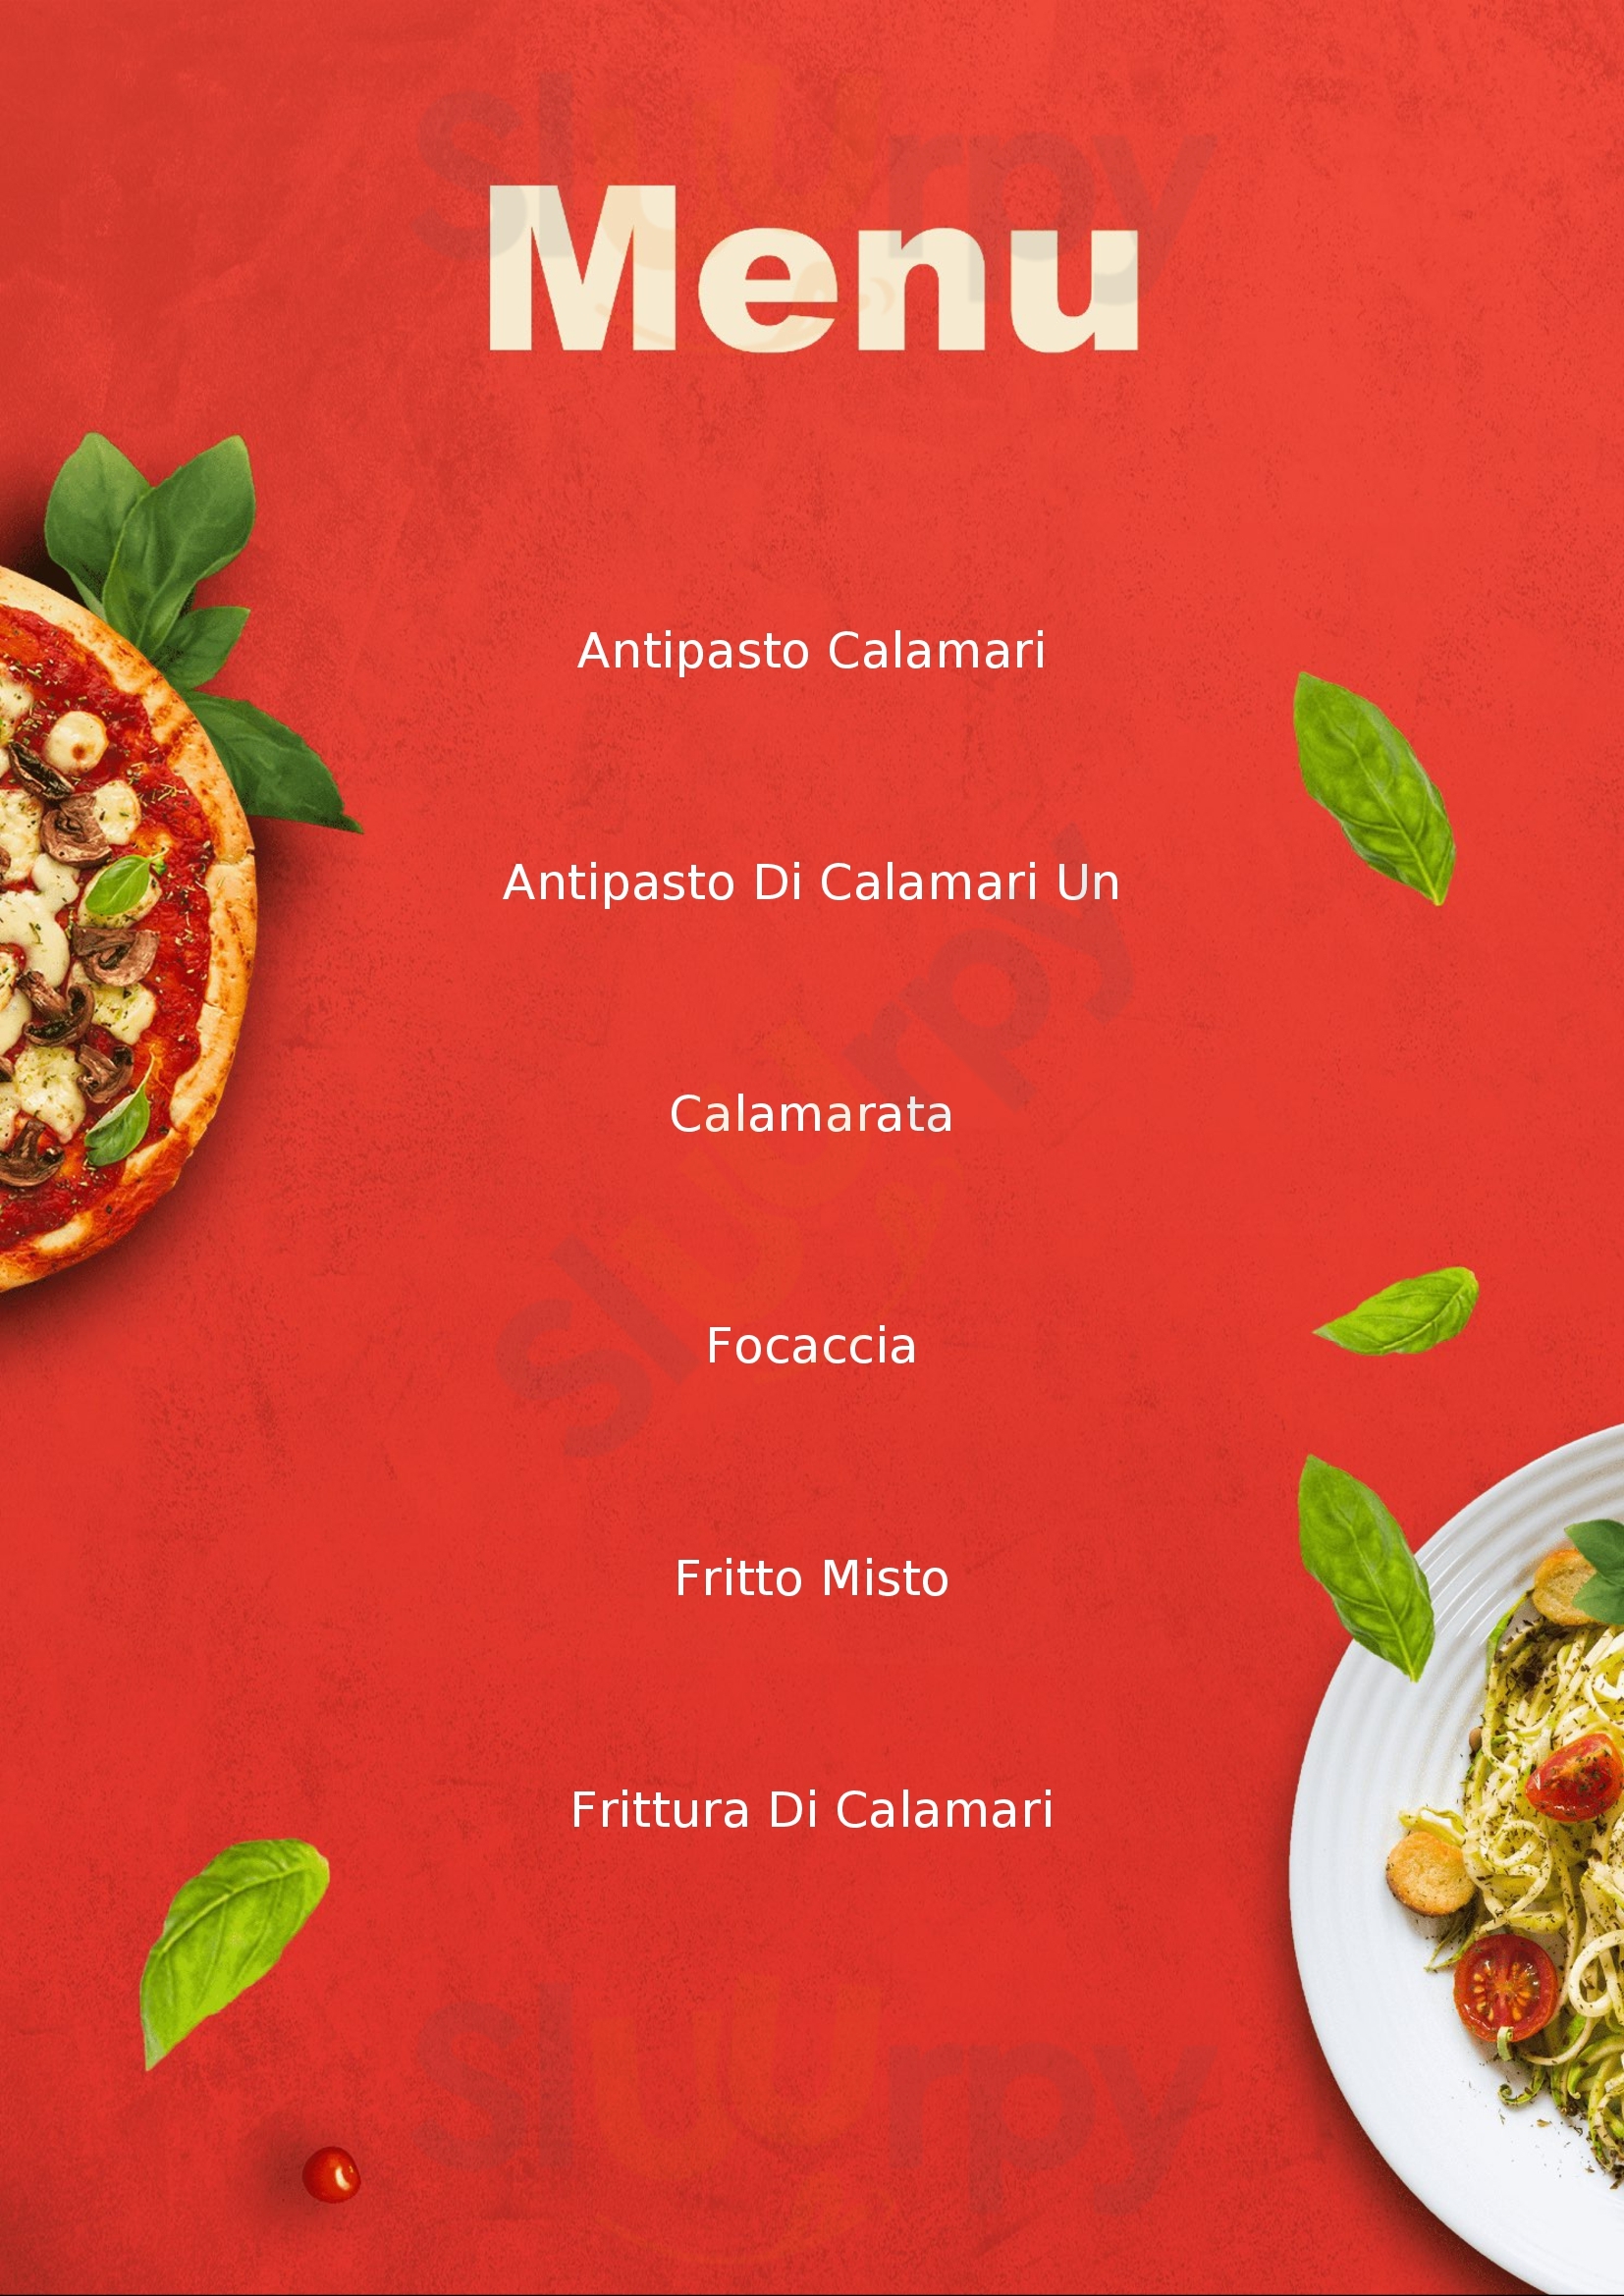 La Conchiglia ristorante e pizzeria Brescia menù 1 pagina